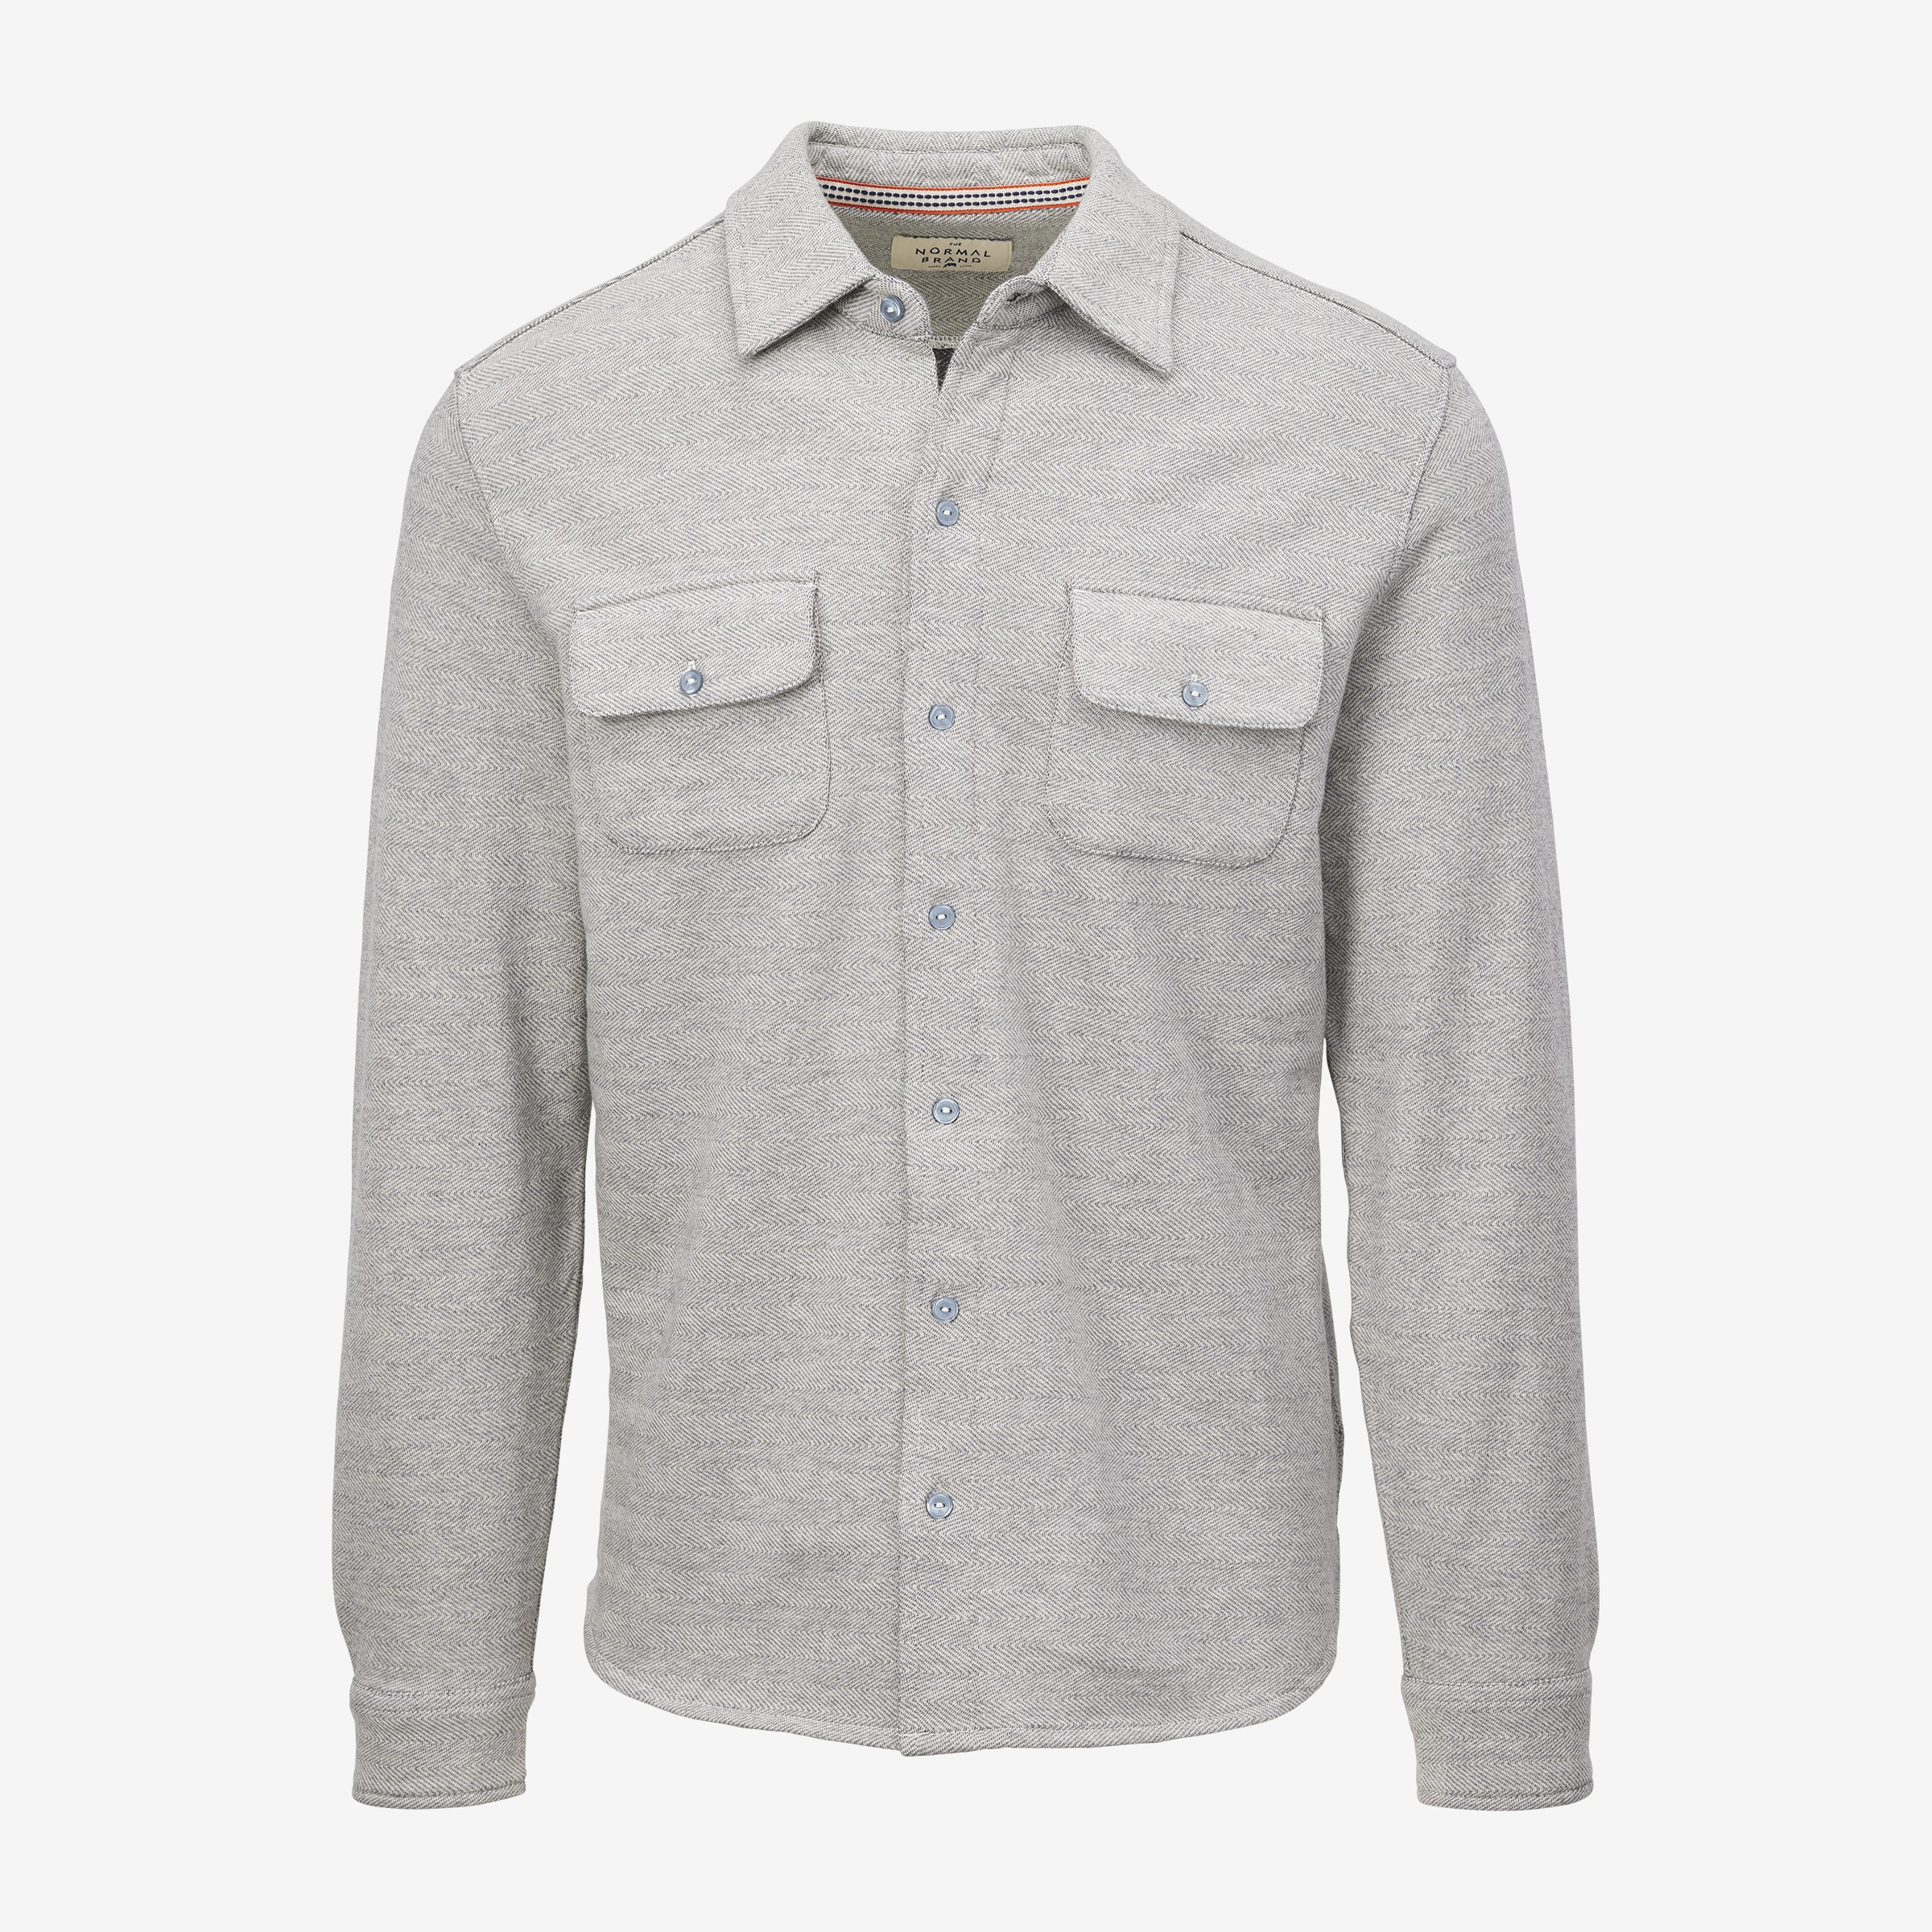 Knit Shirt Shirts | Allen Edmonds